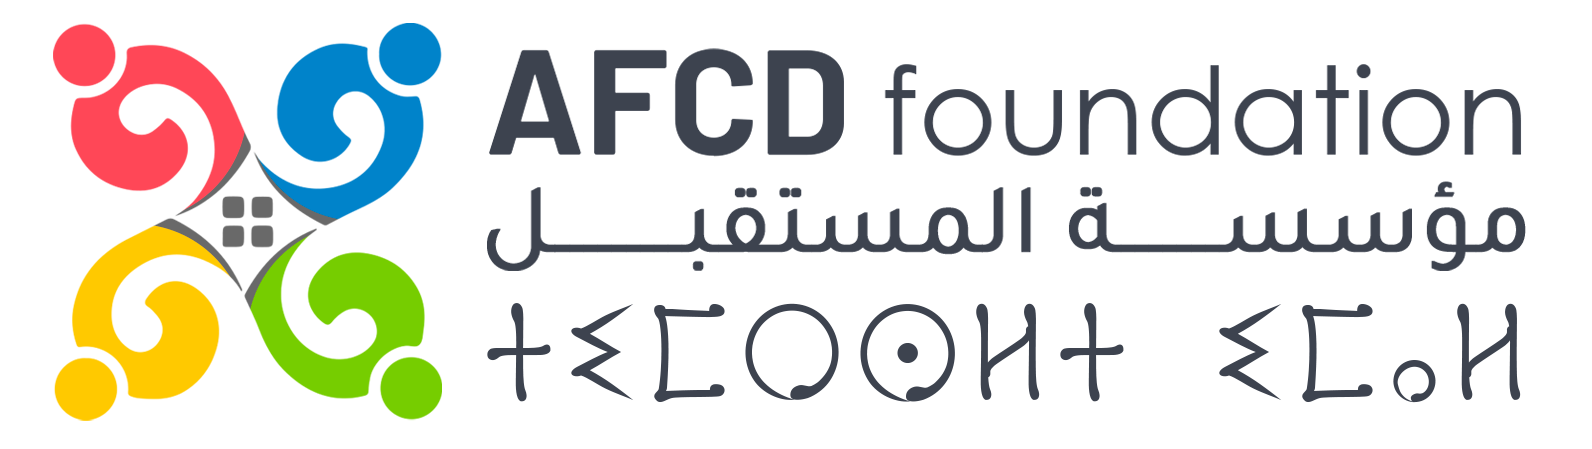 AFCD Foundation